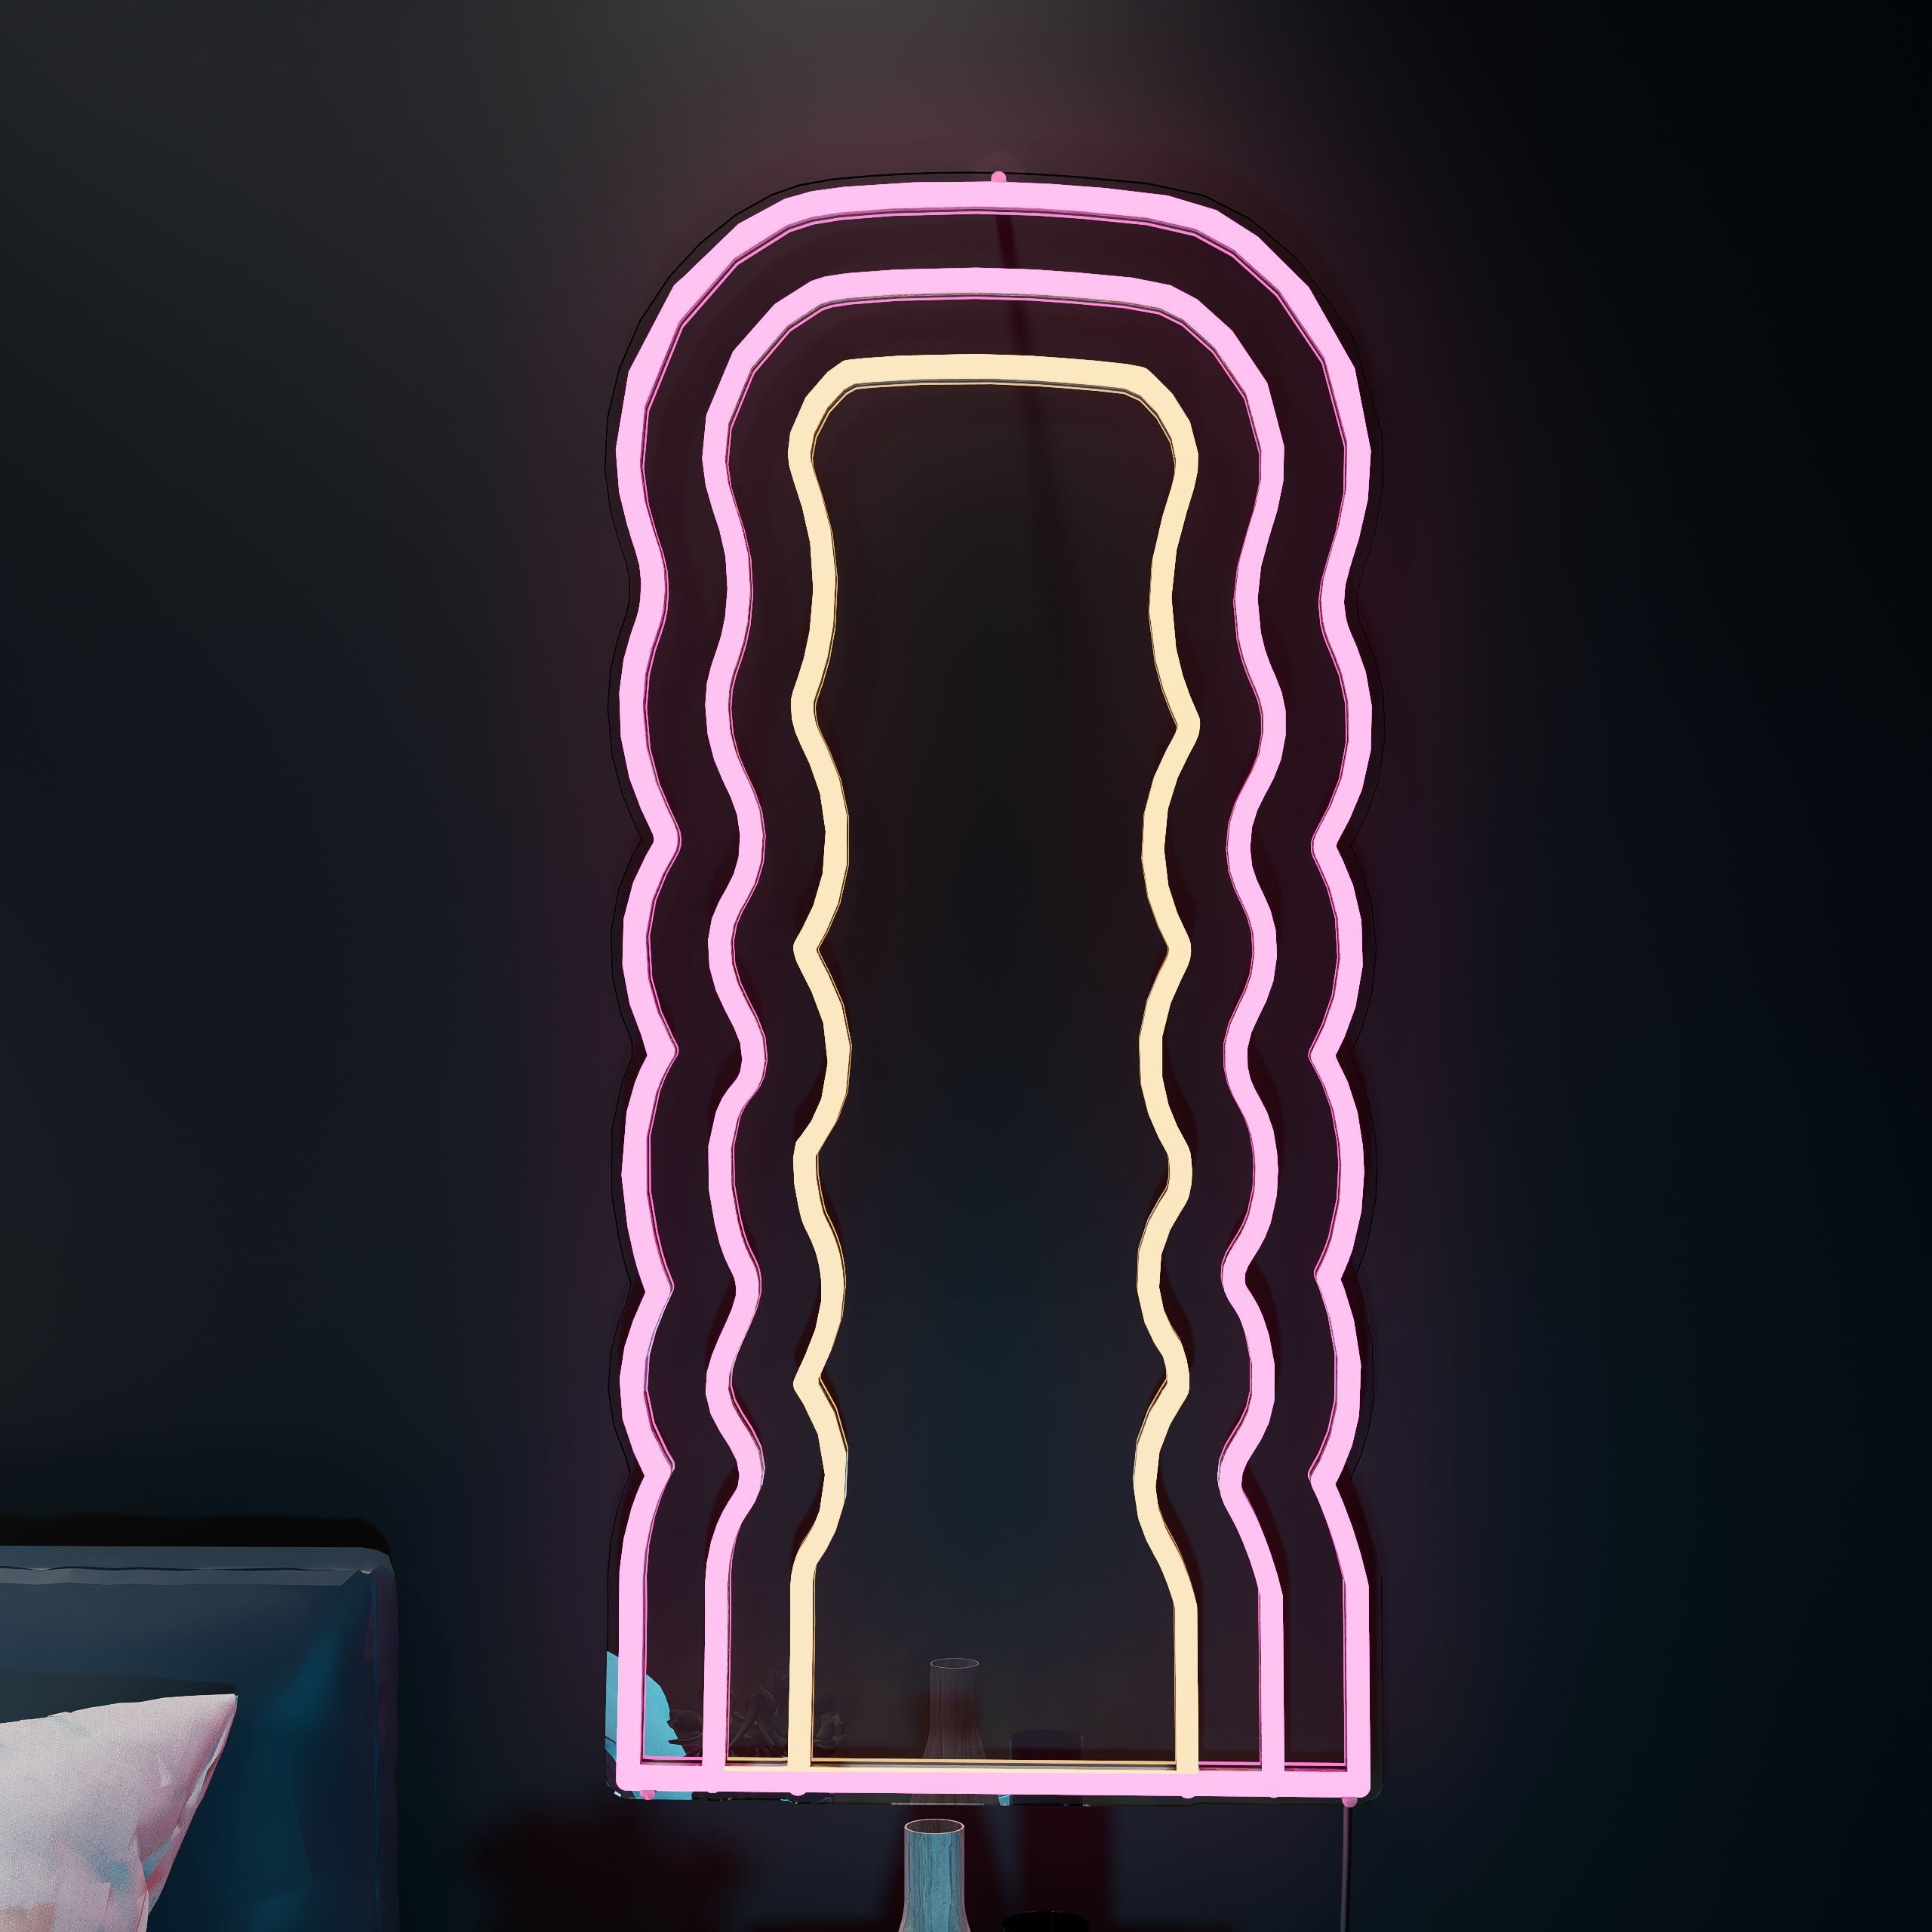 wavy-line-mirror-neon-sign-lite